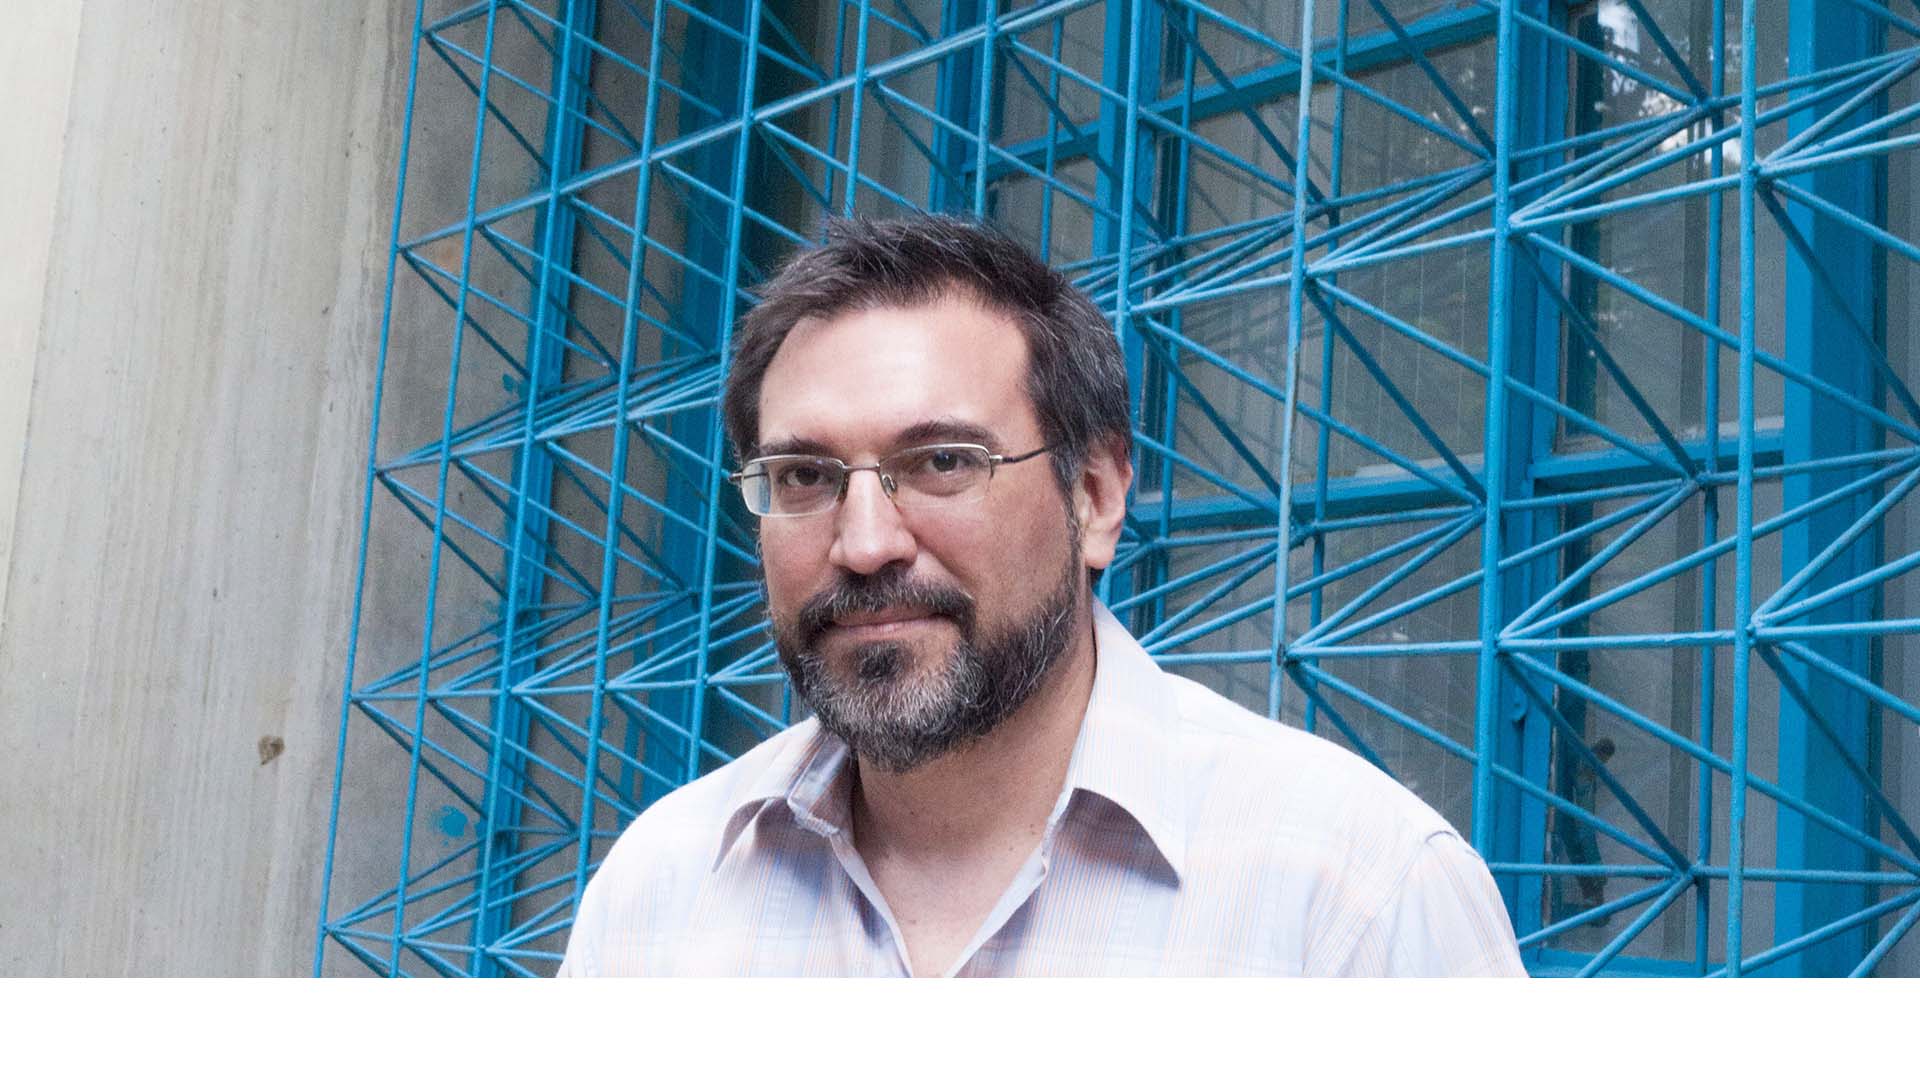 El profesor de la UCAB, Fedosy Santaella, fue reconocido por su novela “Los nombres” en la XLVII edición del Premio Internacional de la ciudad